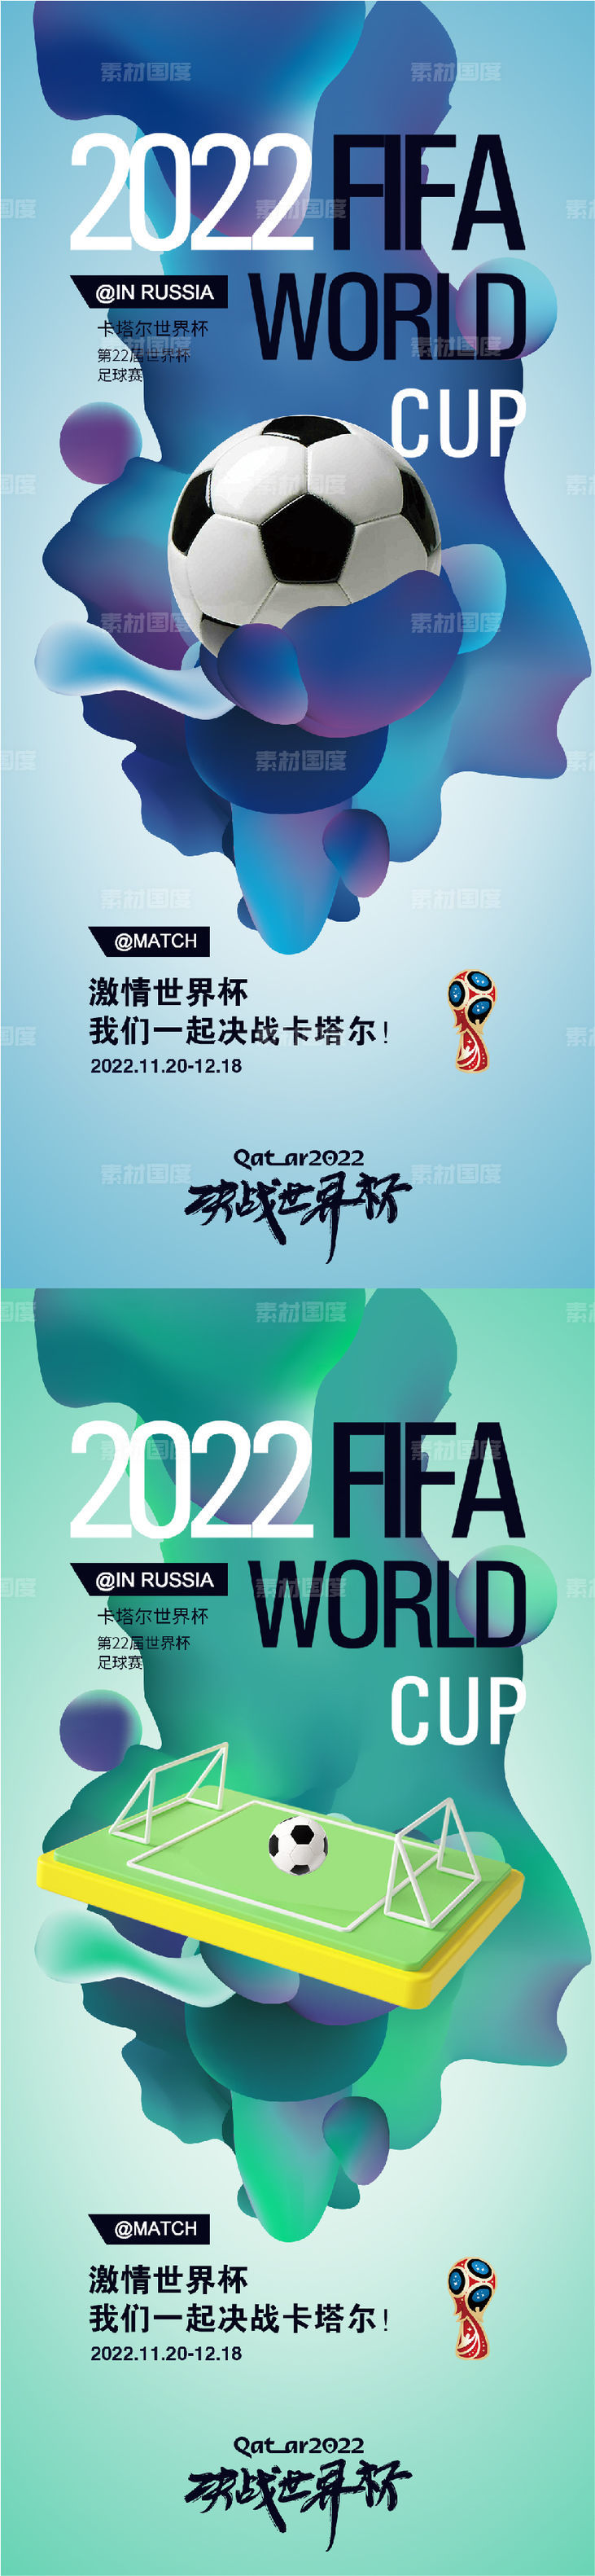 卡塔尔世界杯足球比赛海报